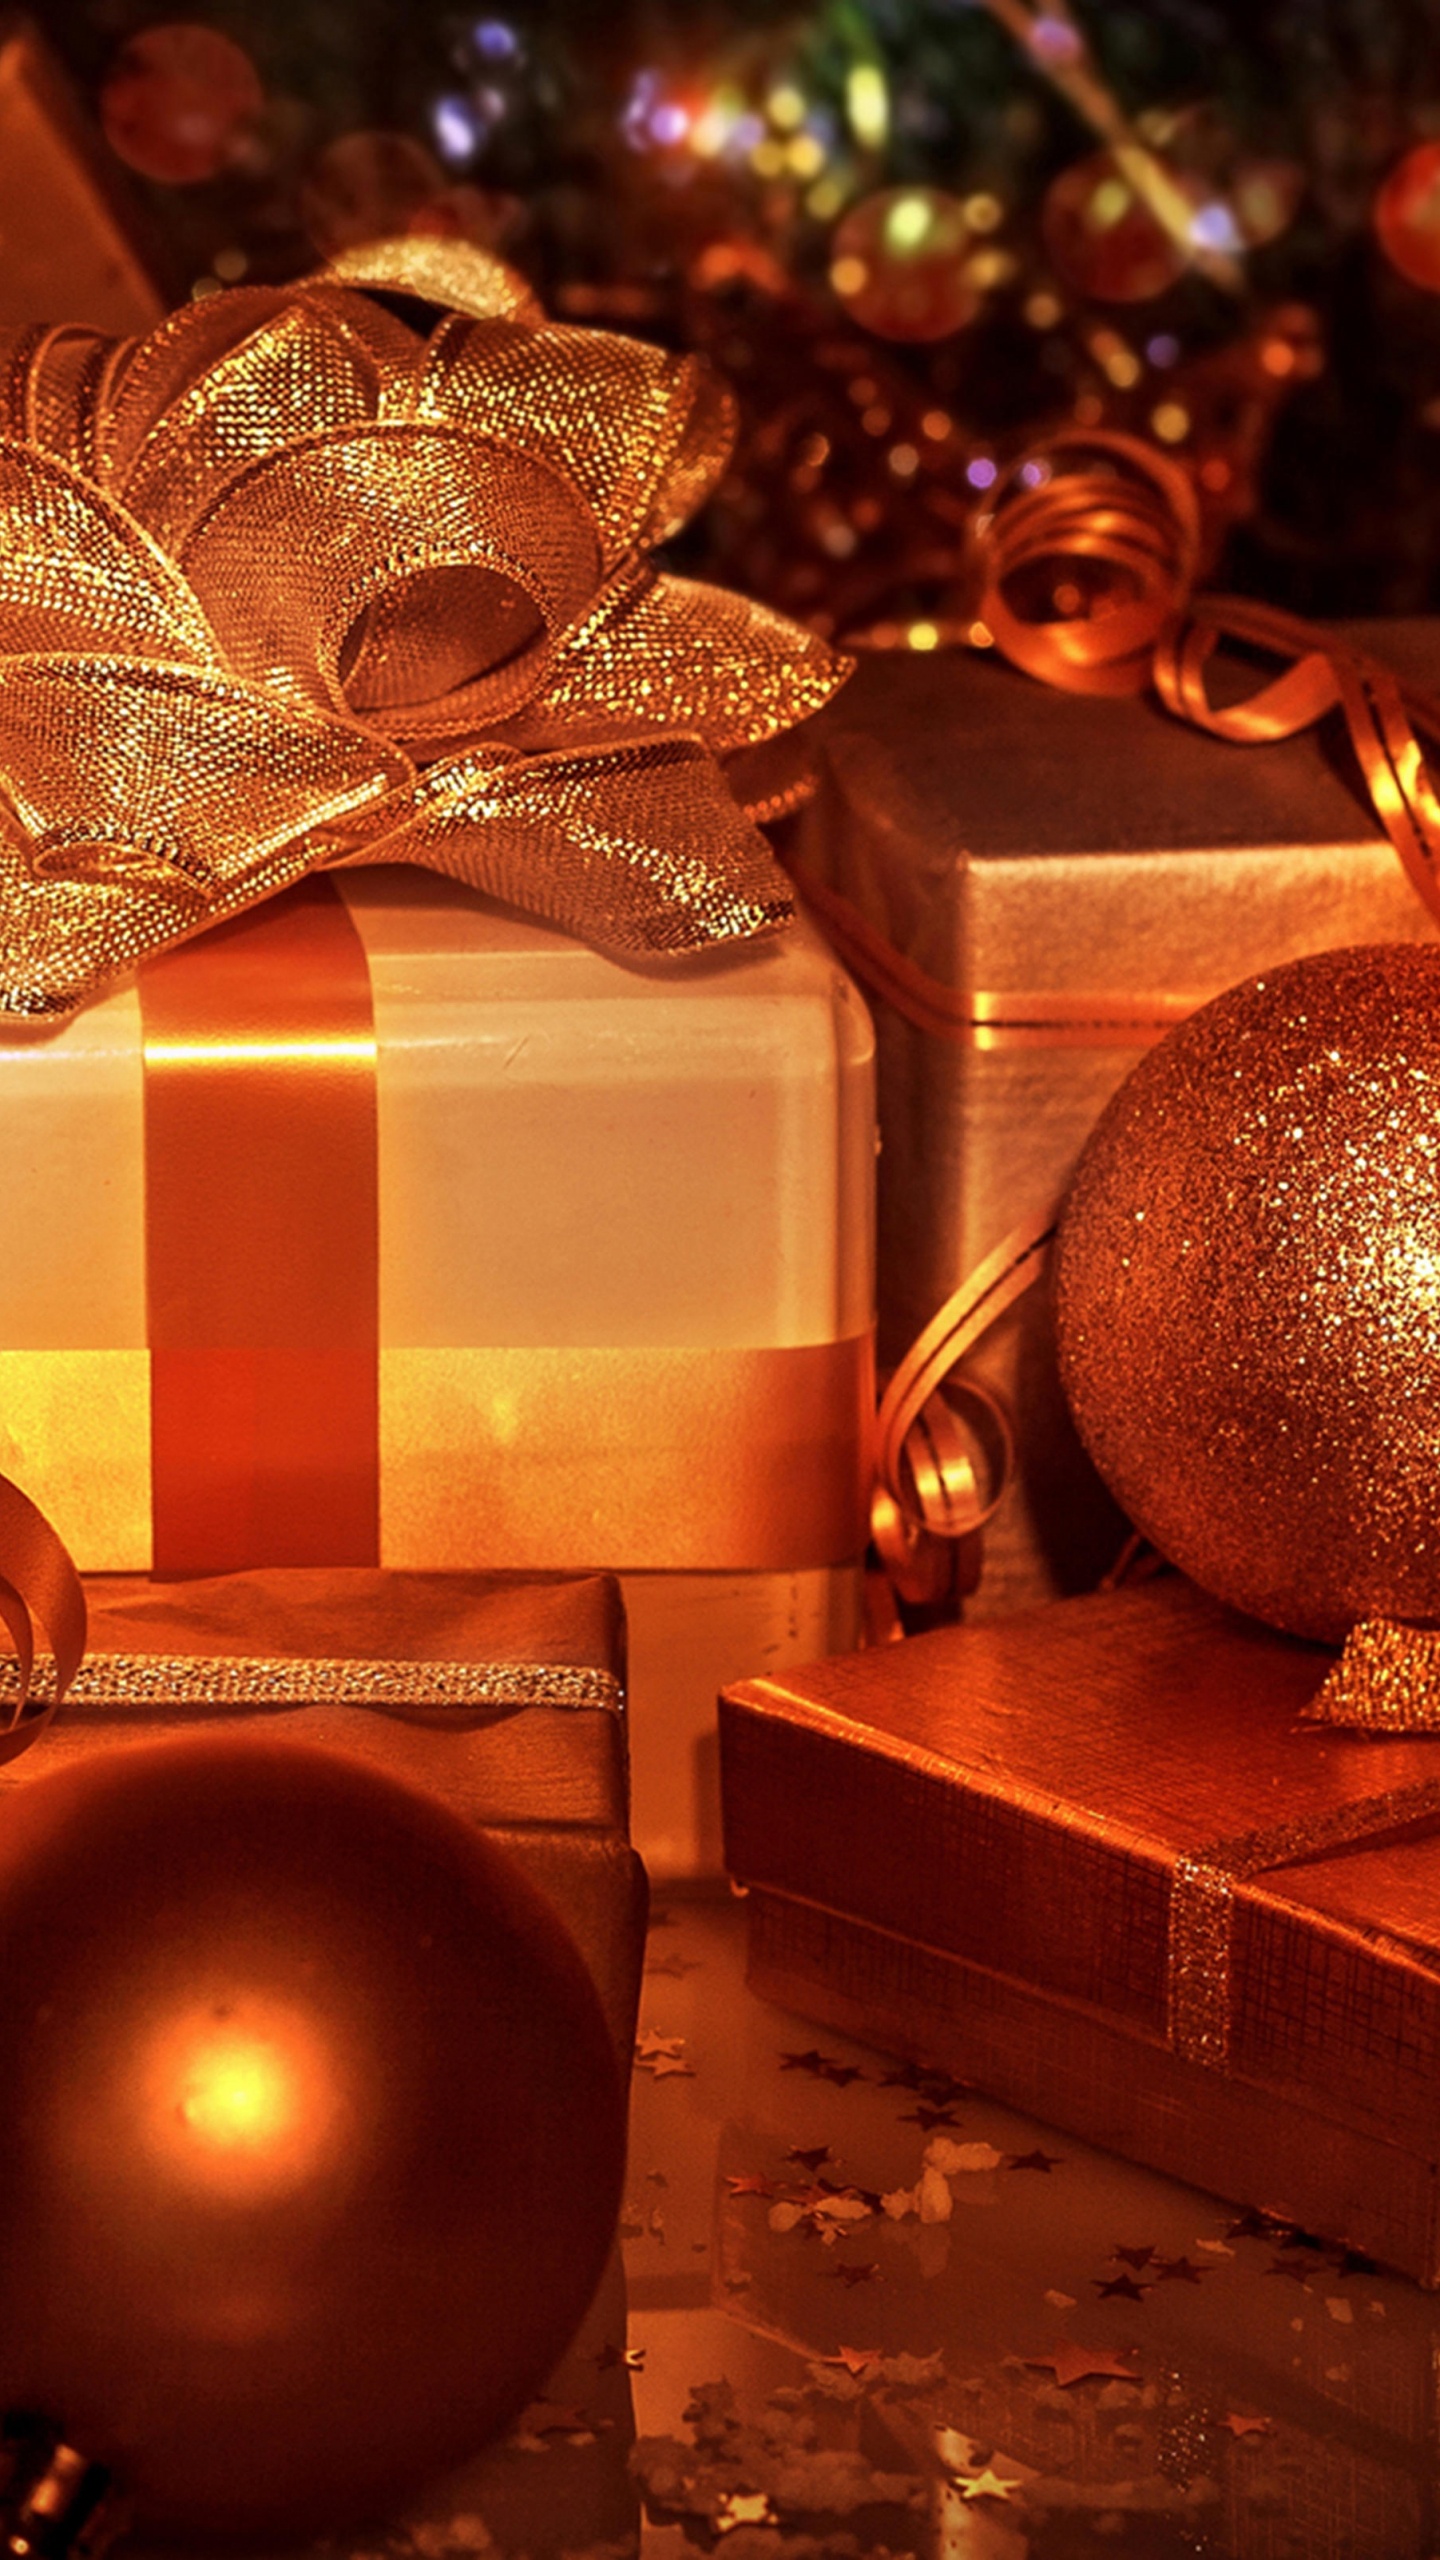 圣诞节那天, 圣诞节的装饰品, 圣诞树, 圣诞节礼物, 假日 壁纸 1440x2560 允许